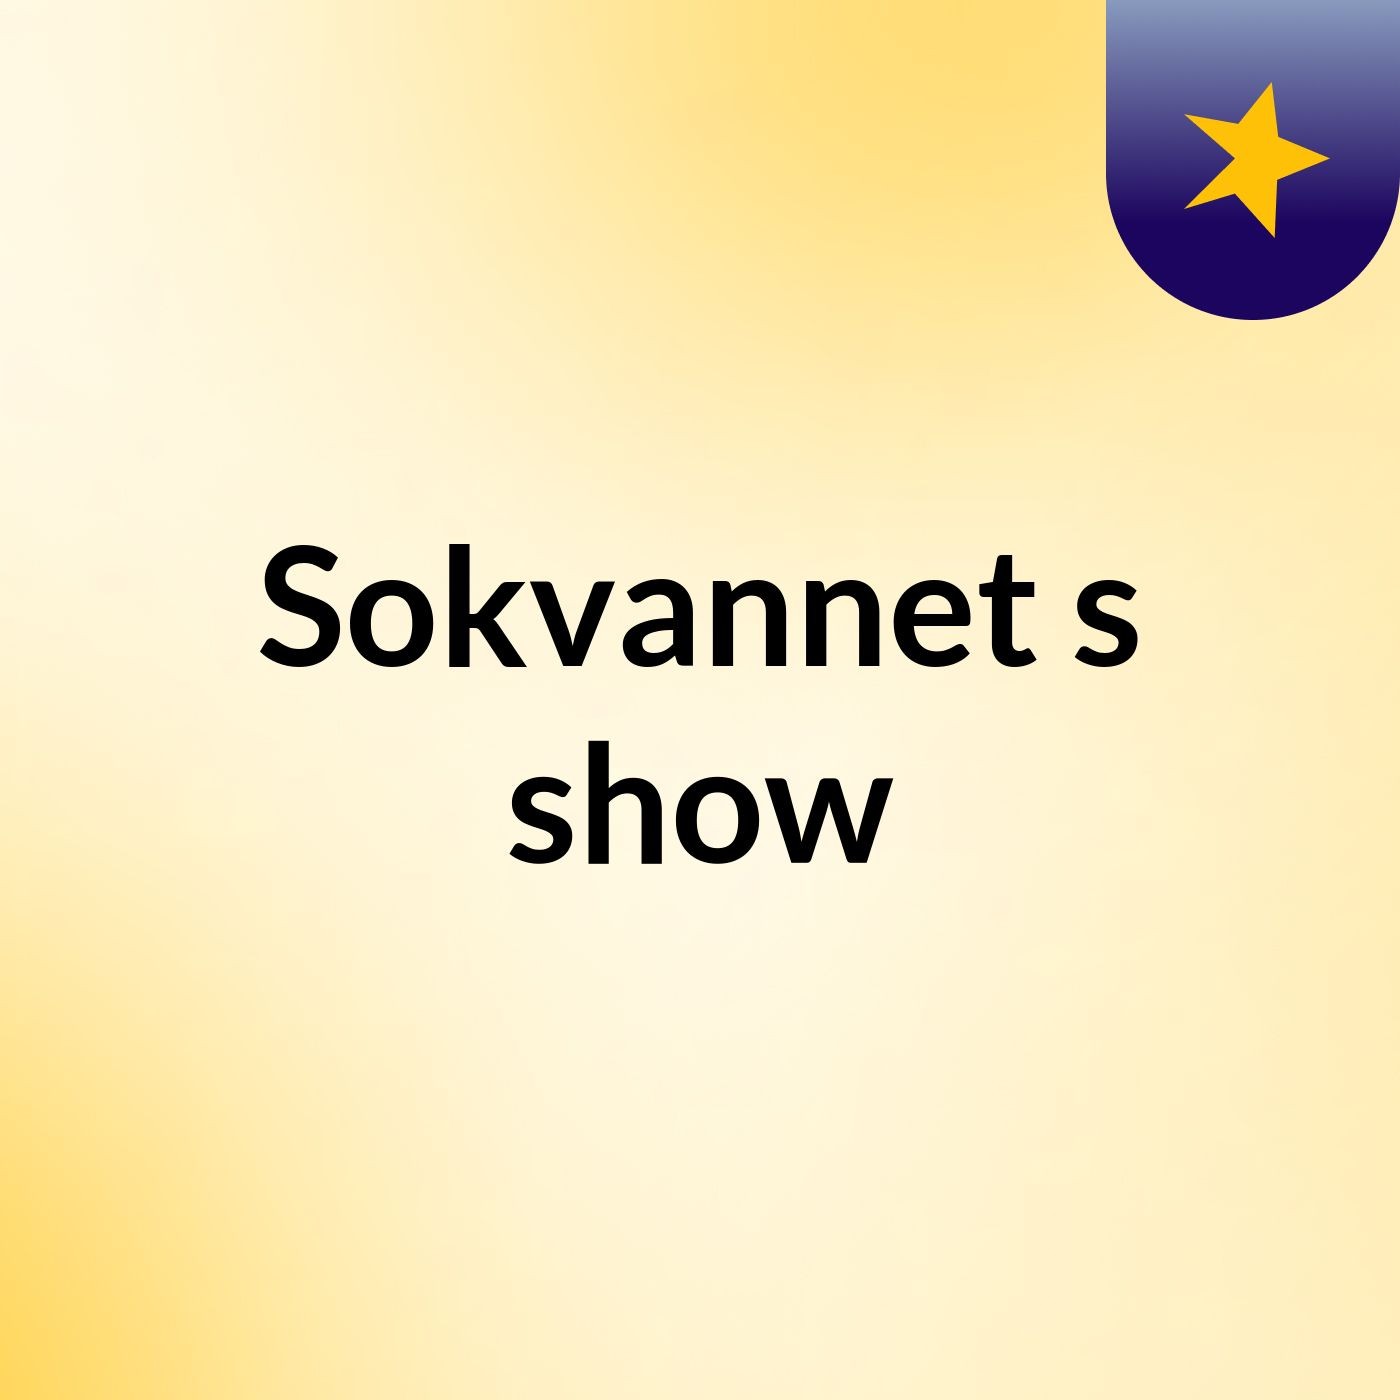 Sokvannet's show